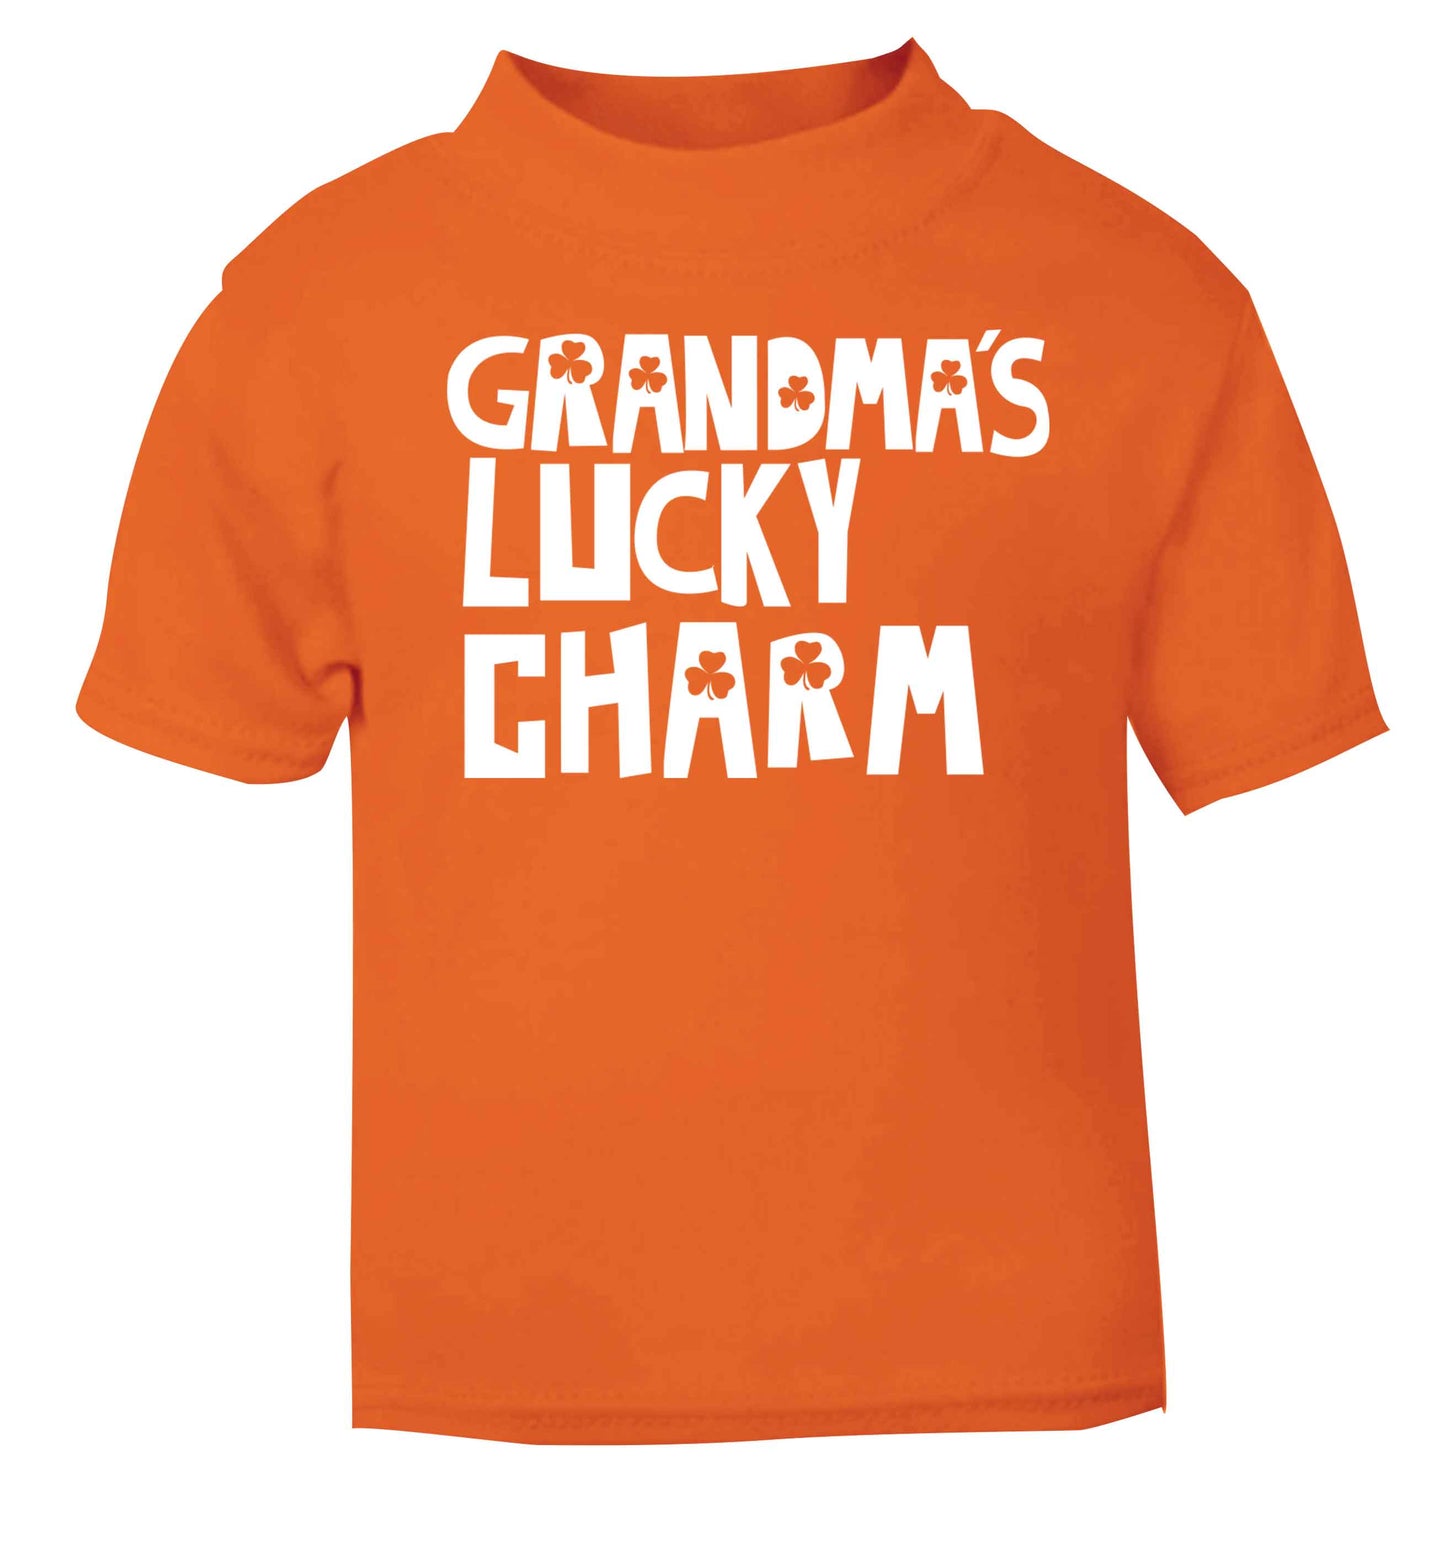 Grandma's lucky charm orange baby toddler Tshirt 2 Years